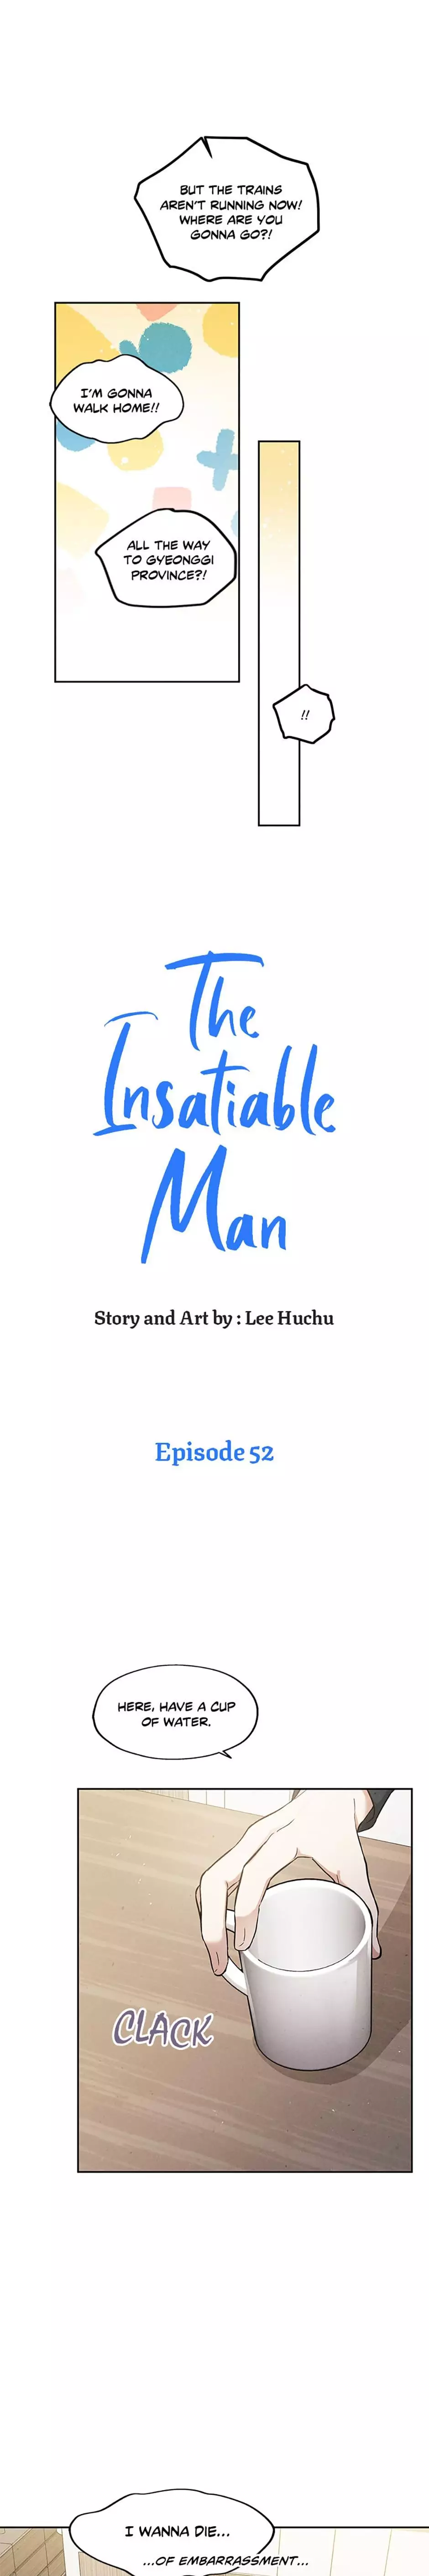 The Insatiable Man - 52 page 4-c6c70a70